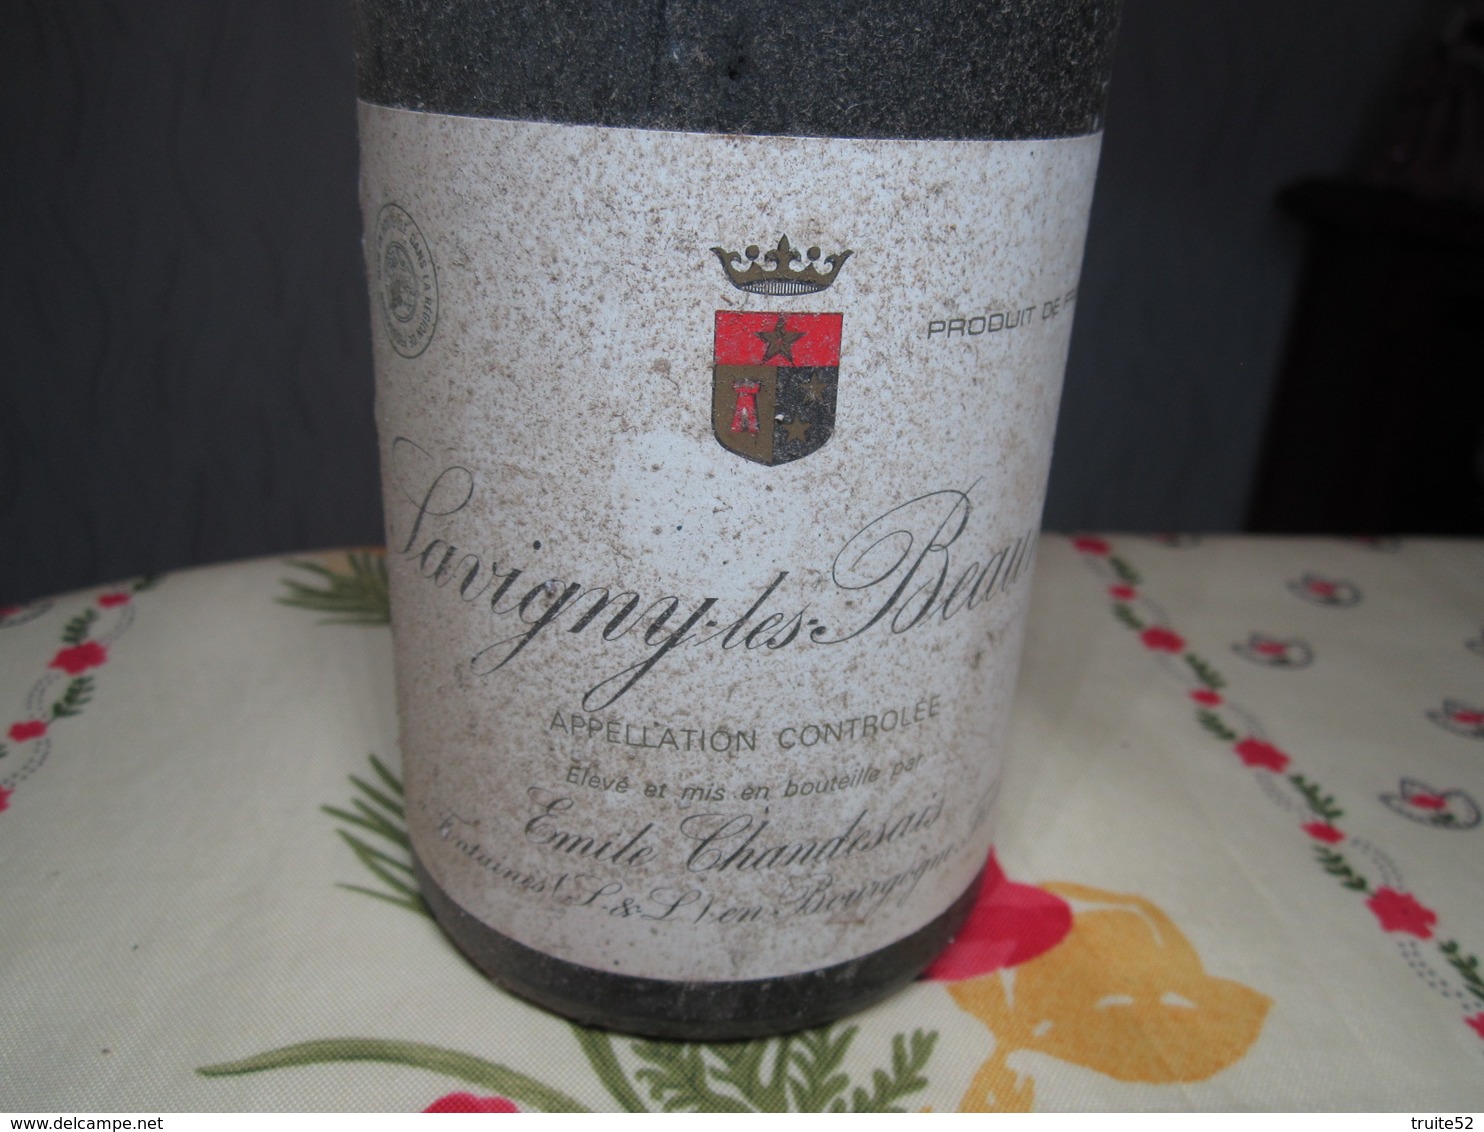 VIN SAVIGNY LES BEAUNE Propriétaire Emile CHANDESAIS FONTAINES (S Et L) En Bourgogne - Vin